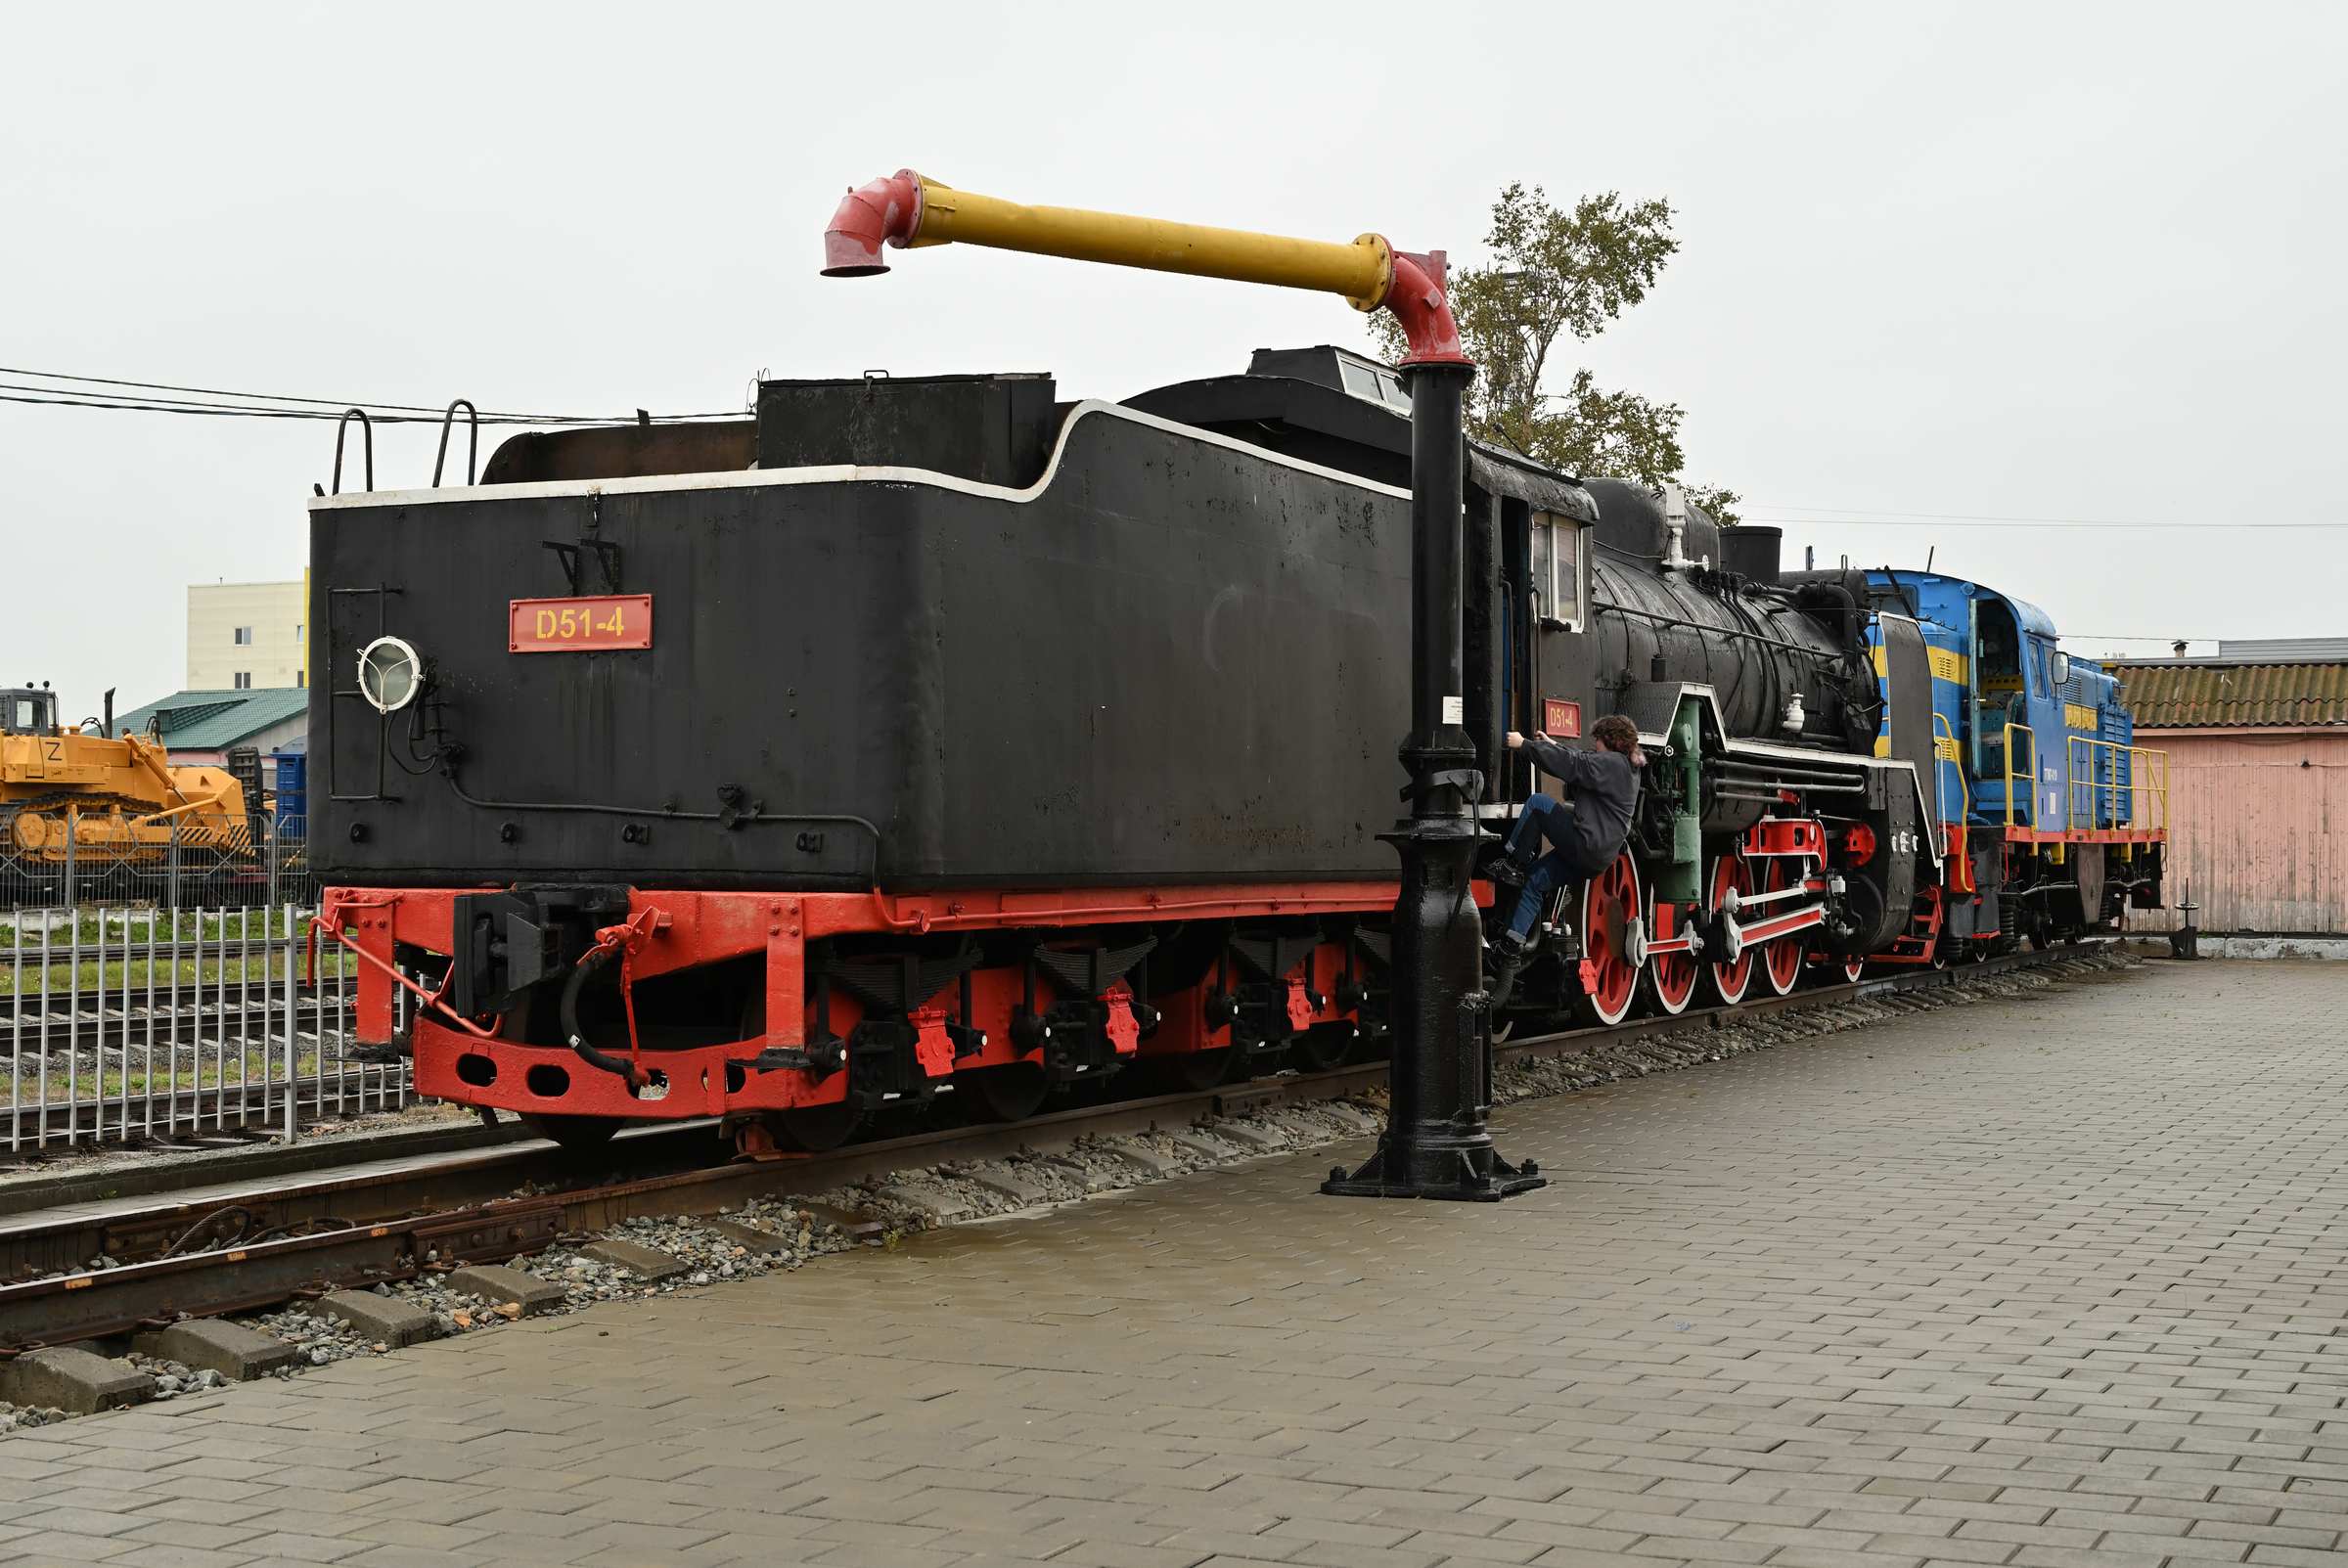 Японский паровоз D51-4 в музее Сахалинской железной дороги.